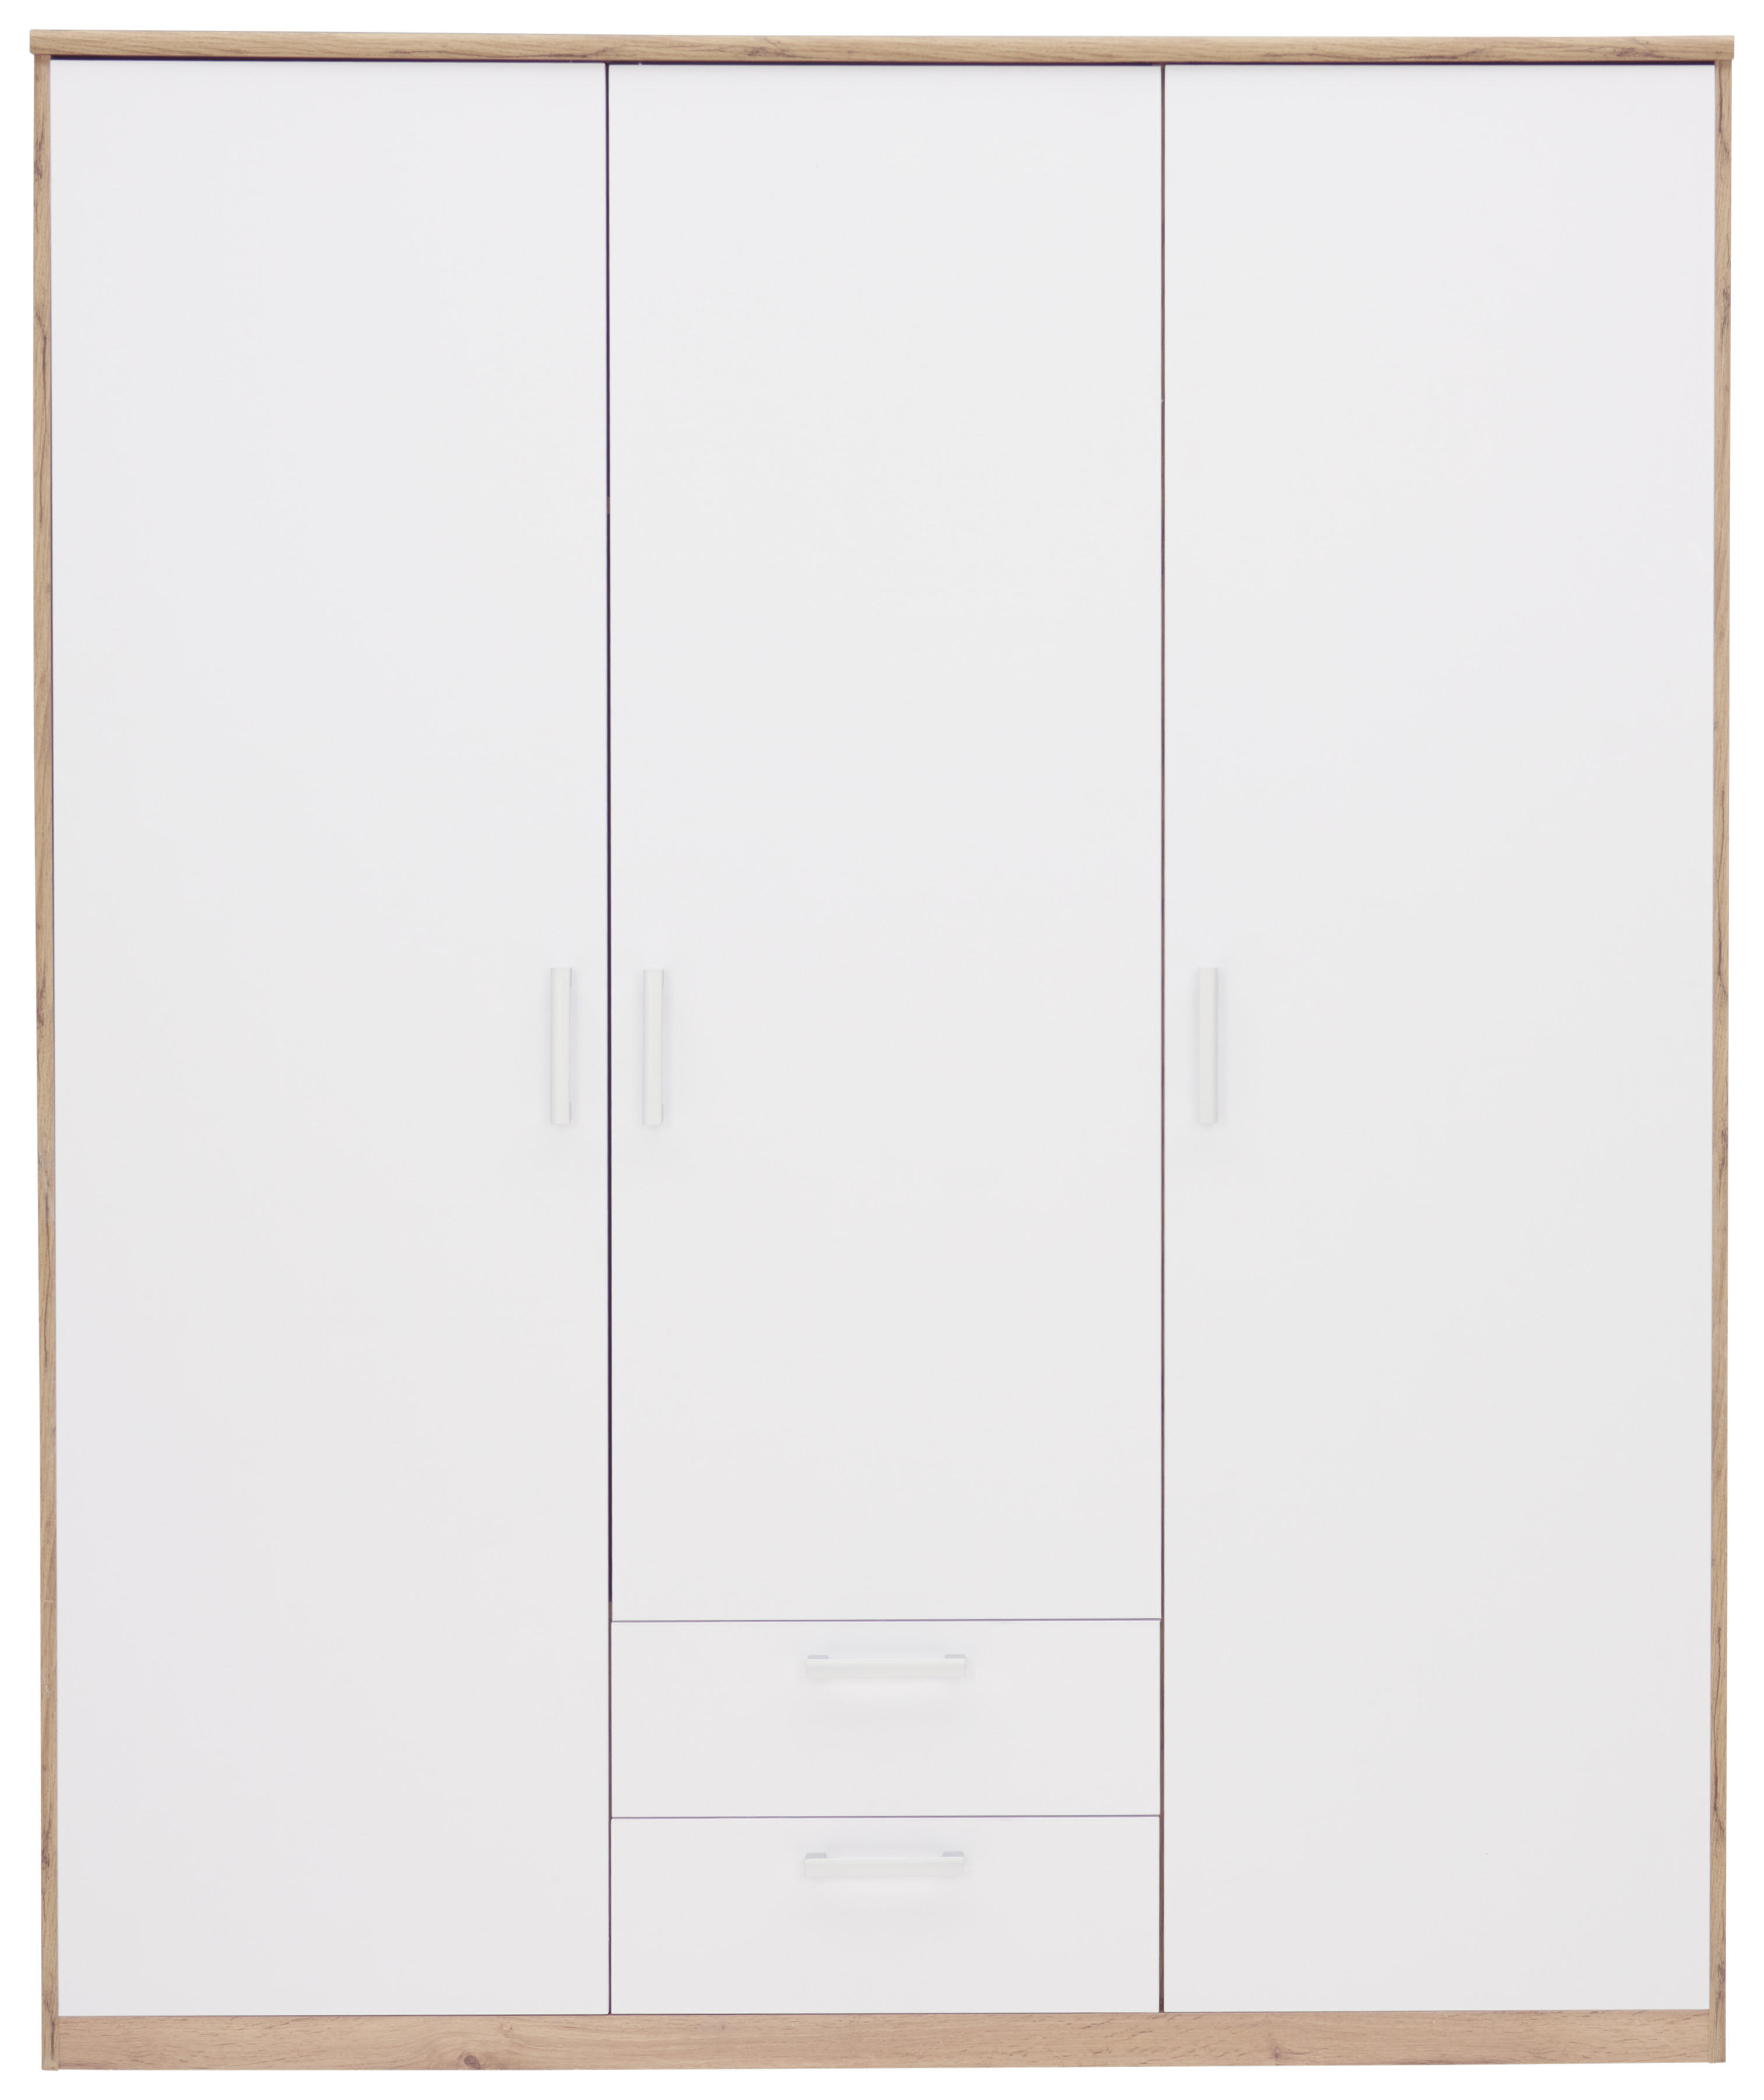 ŠATNÍKOVÁ SKRIŇA, biela, farby dubu, 157/194/54 cm - farby dubu/biela, Konventionell, kompozitné drevo/plast (157/194/54cm) - Xora